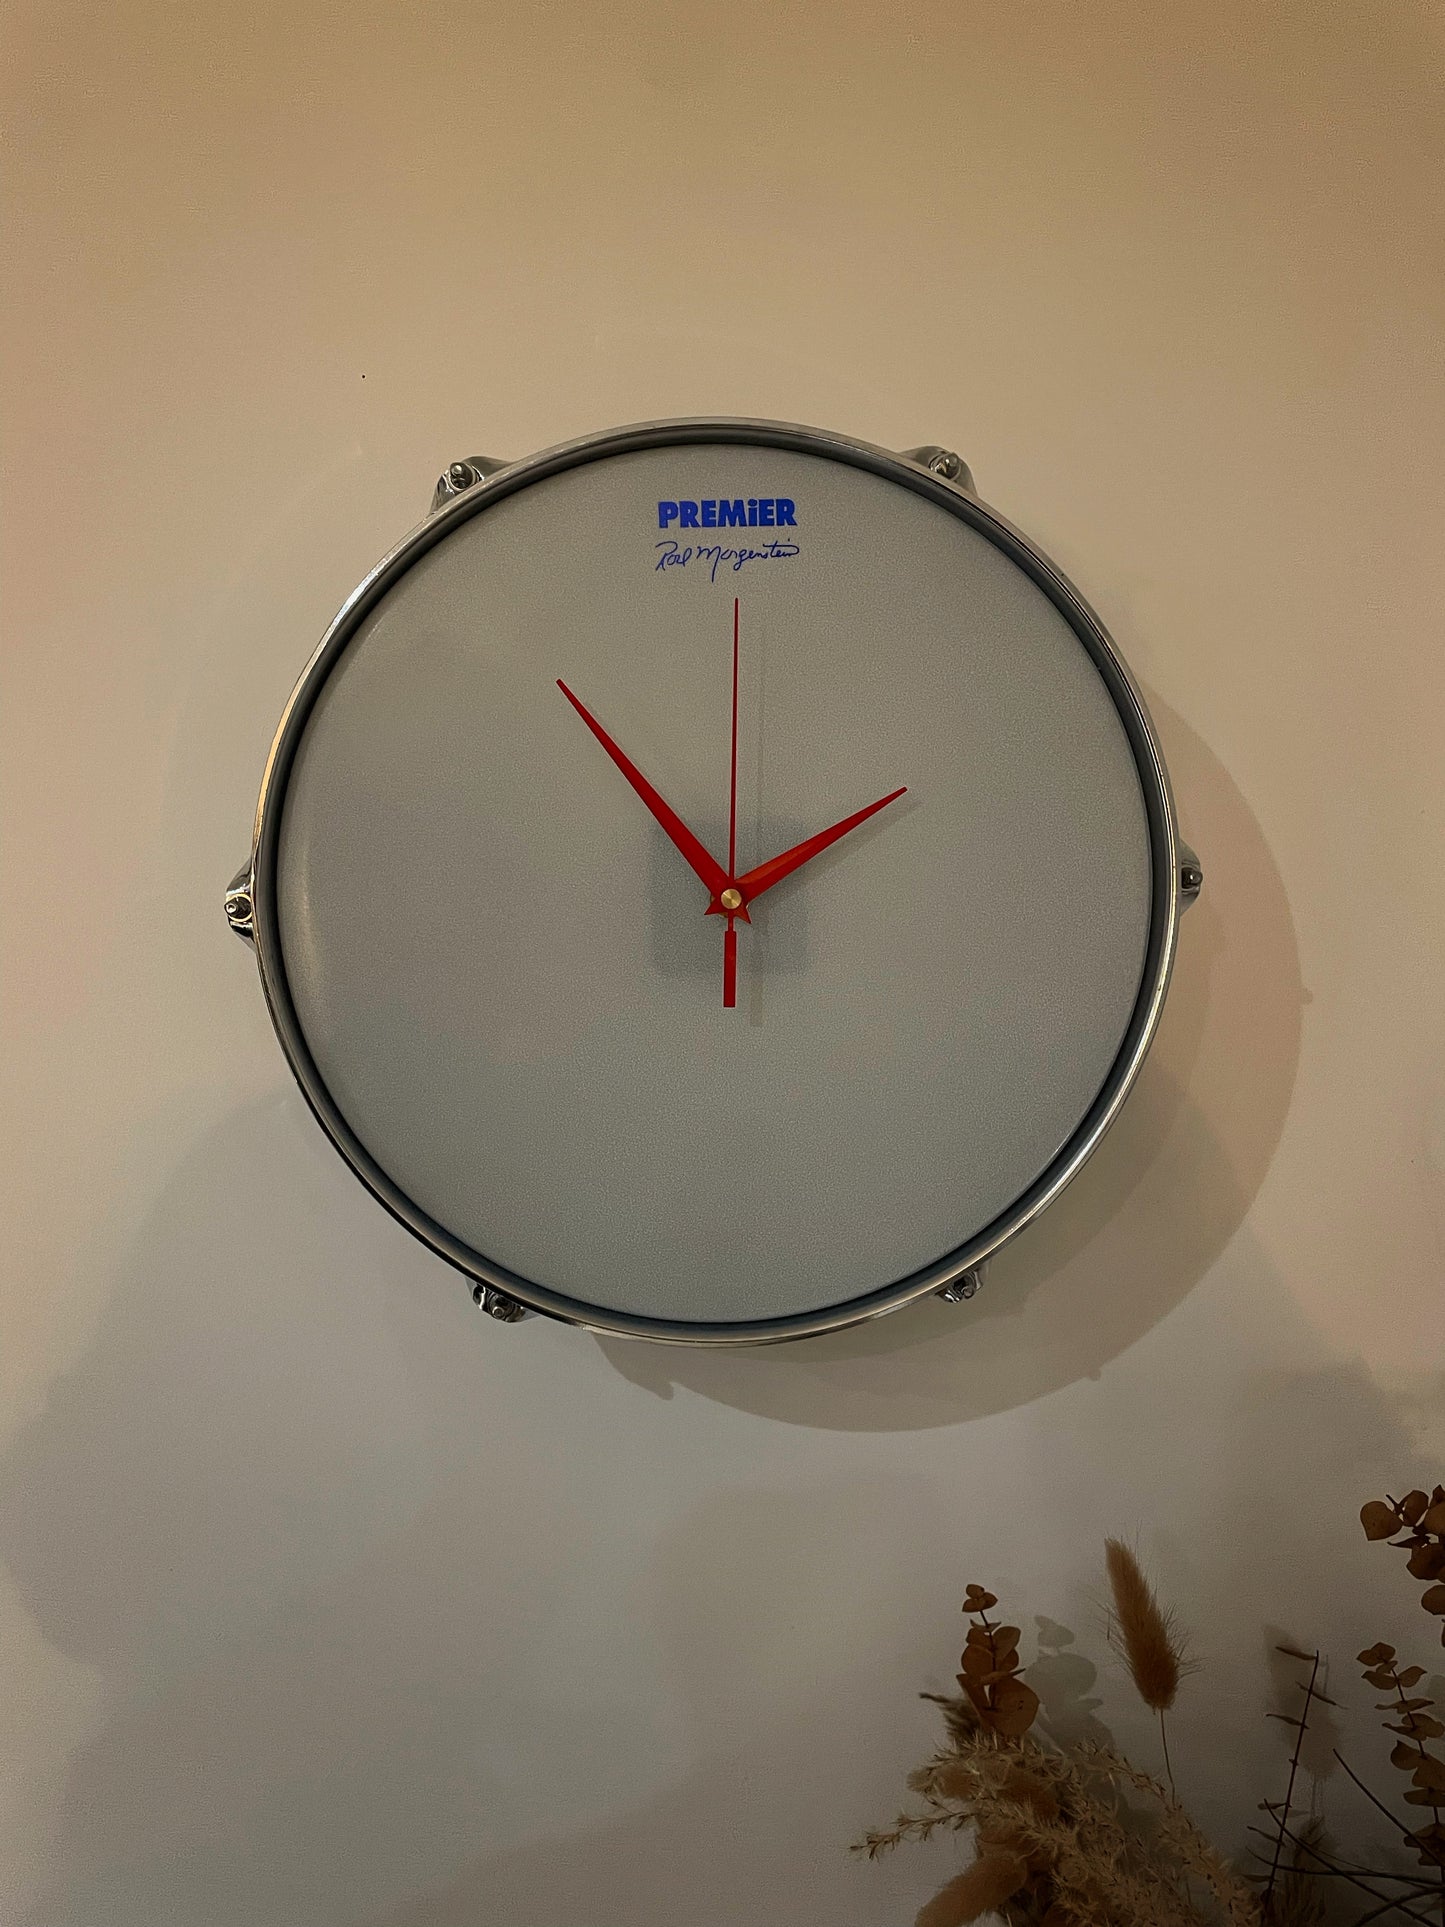 Premier Drum Clock / Wall Mounted 12” Drum Clock / Black / Upcycled Drum / Drum Kit